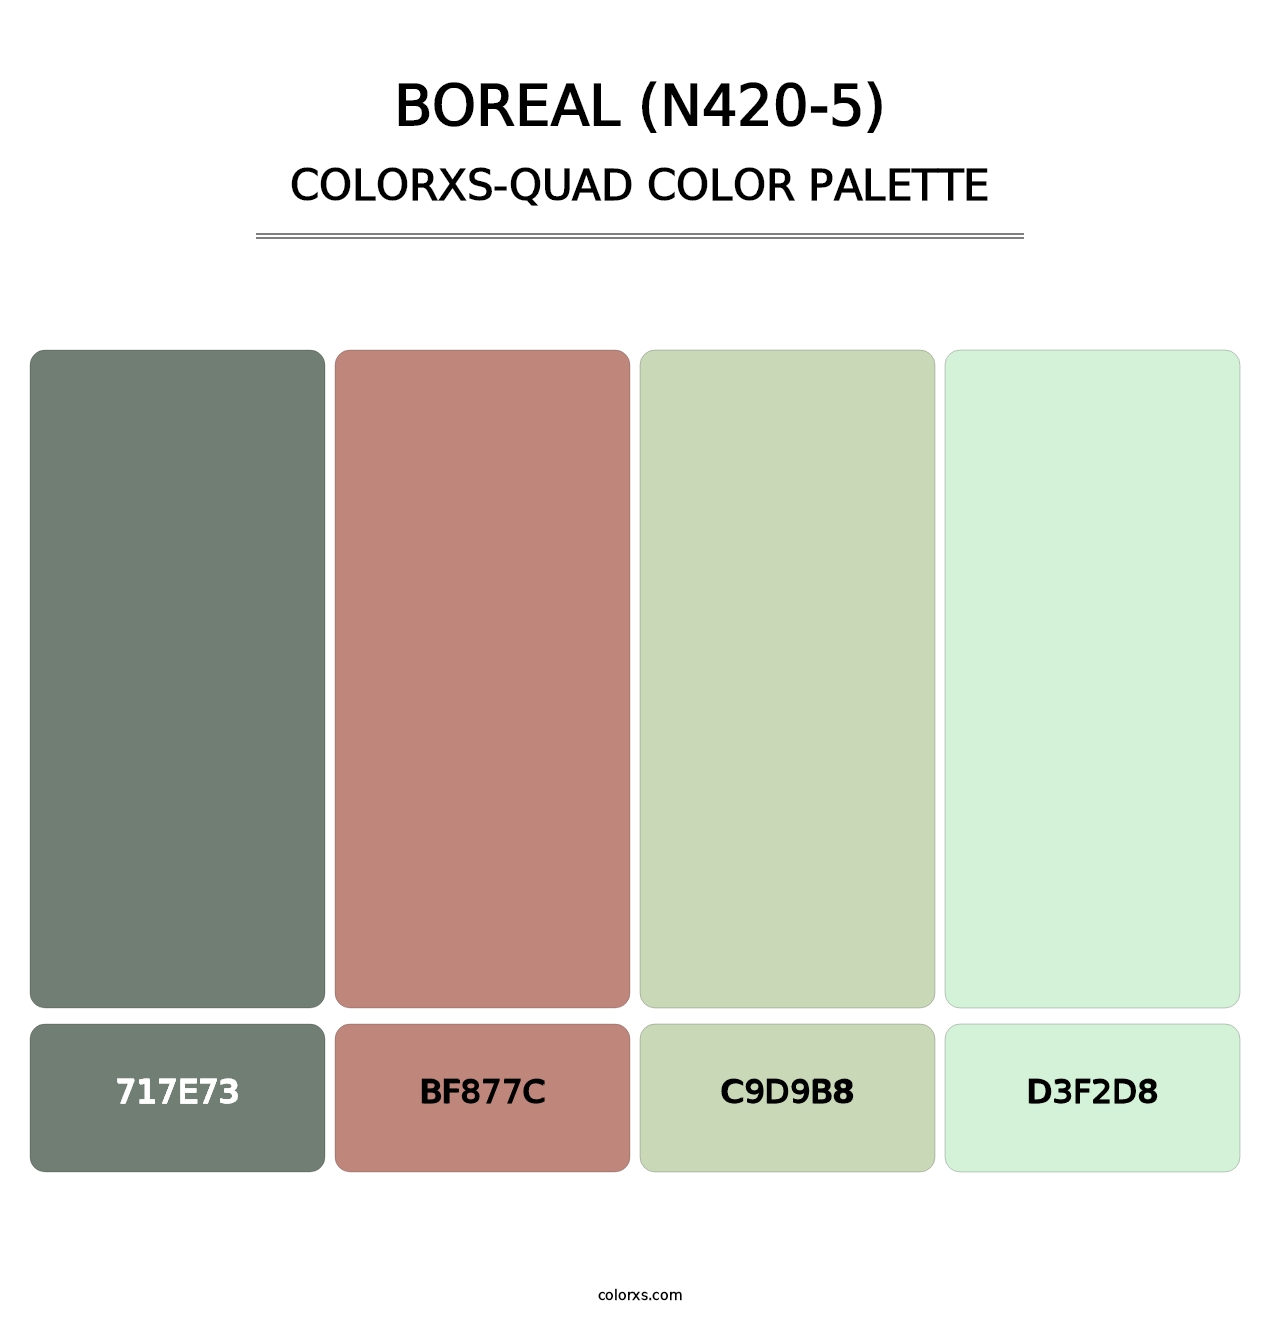 Boreal (N420-5) - Colorxs Quad Palette